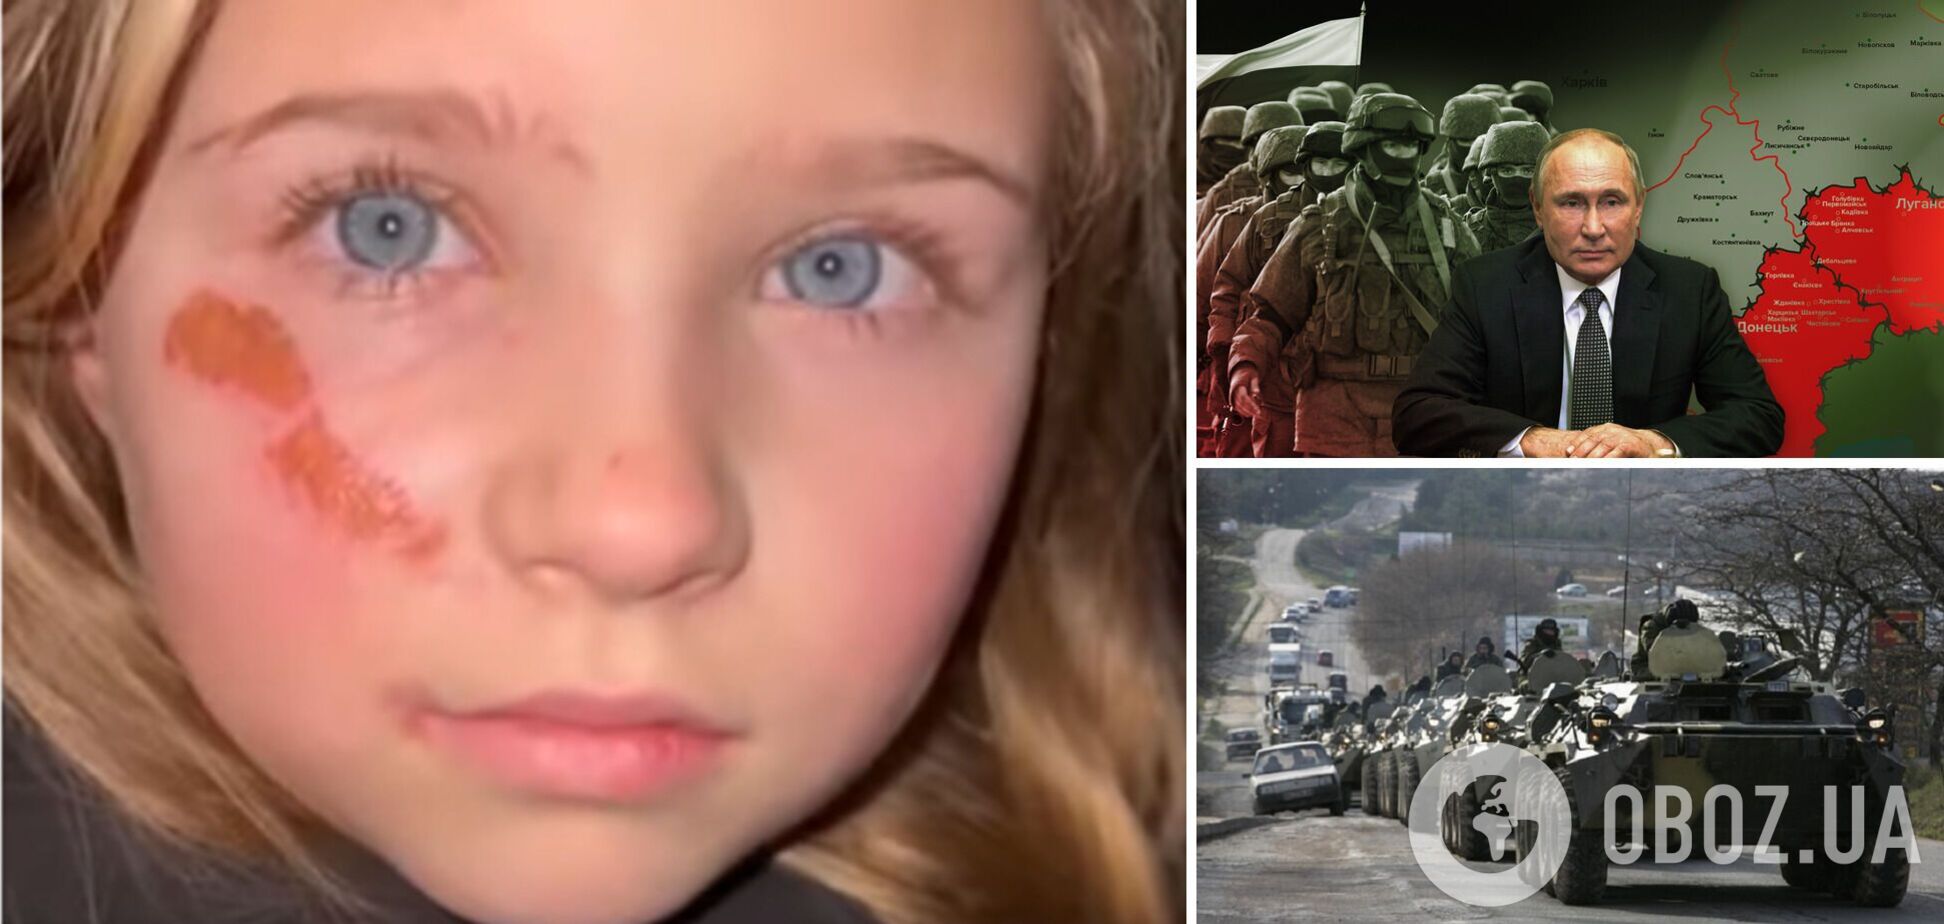 'Отзовите свои войска!': девочка из Украины обратилась к Путину с призывом остановить войну. Видео